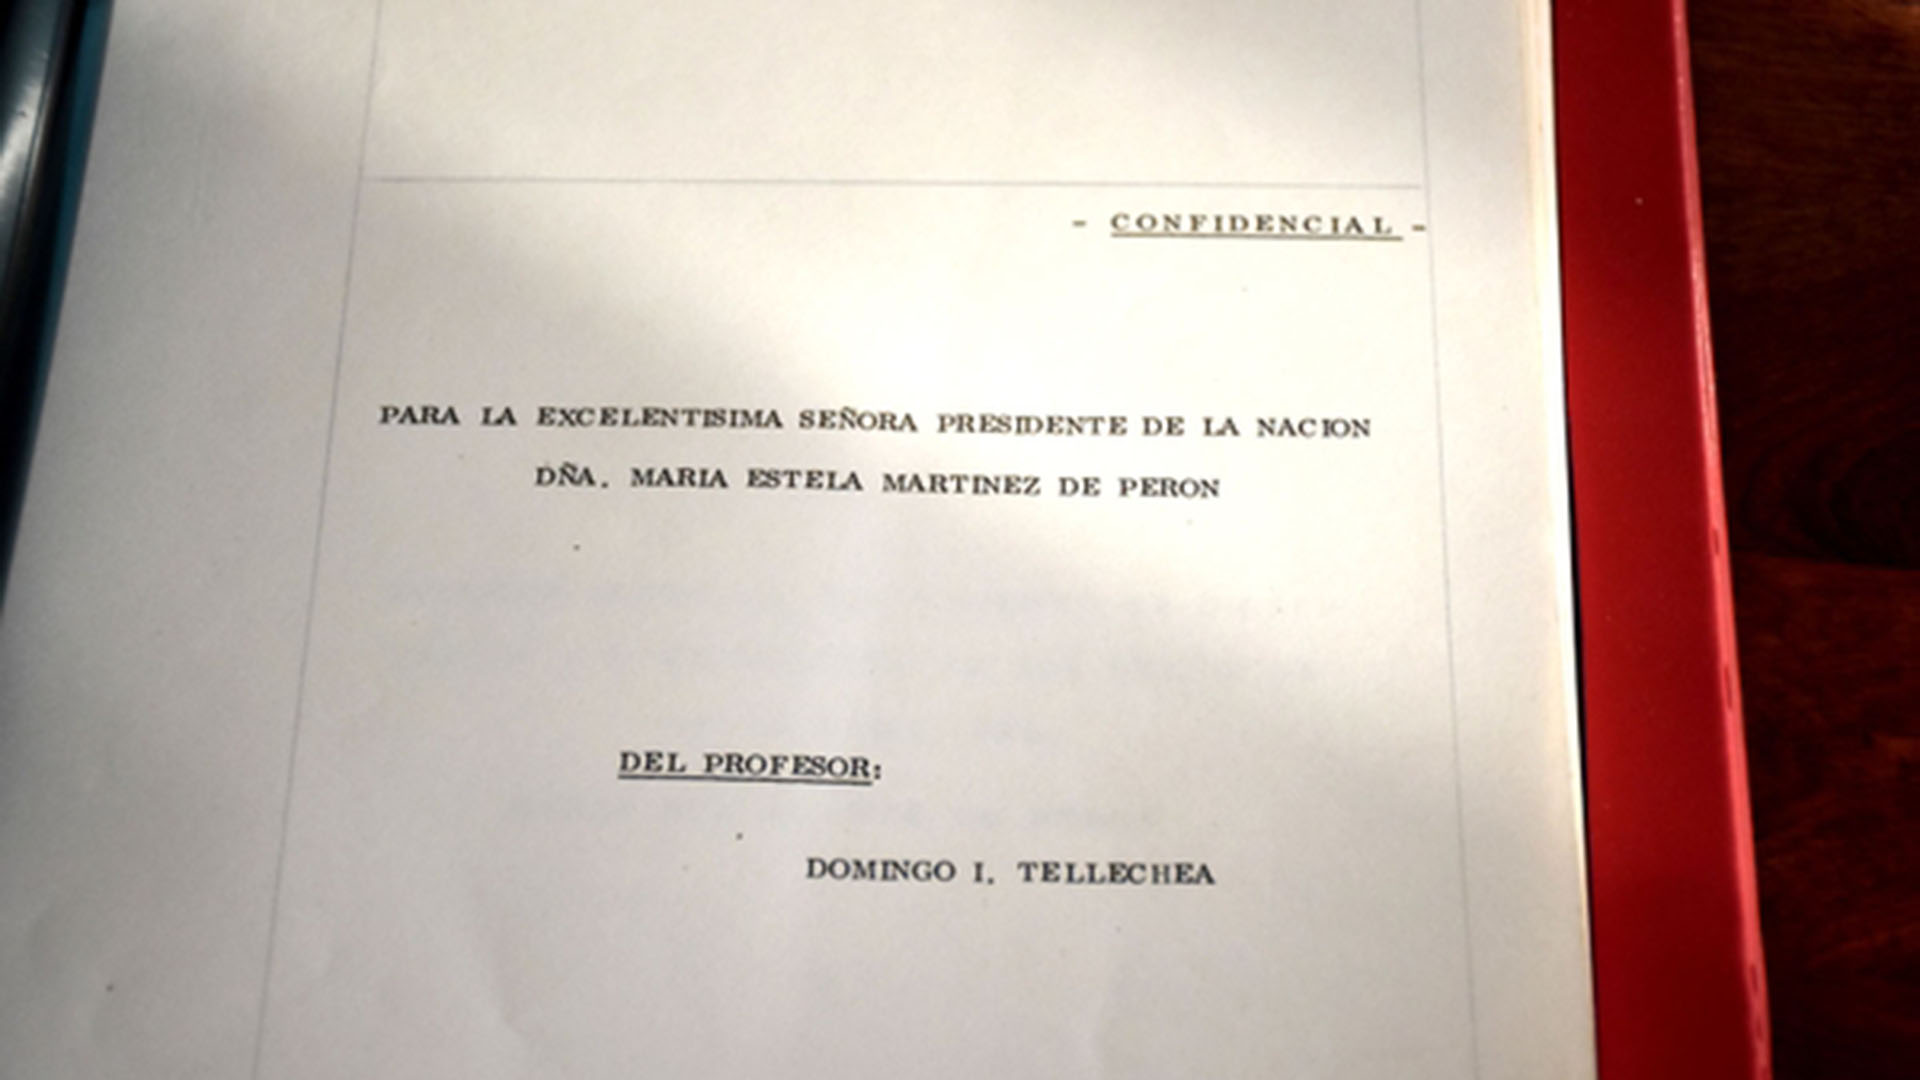 El primer trabajo de restauración del cuerpo de Evito fue ordenado por Isabel Perón y la tarea recayó sobre Domingo Tellechea